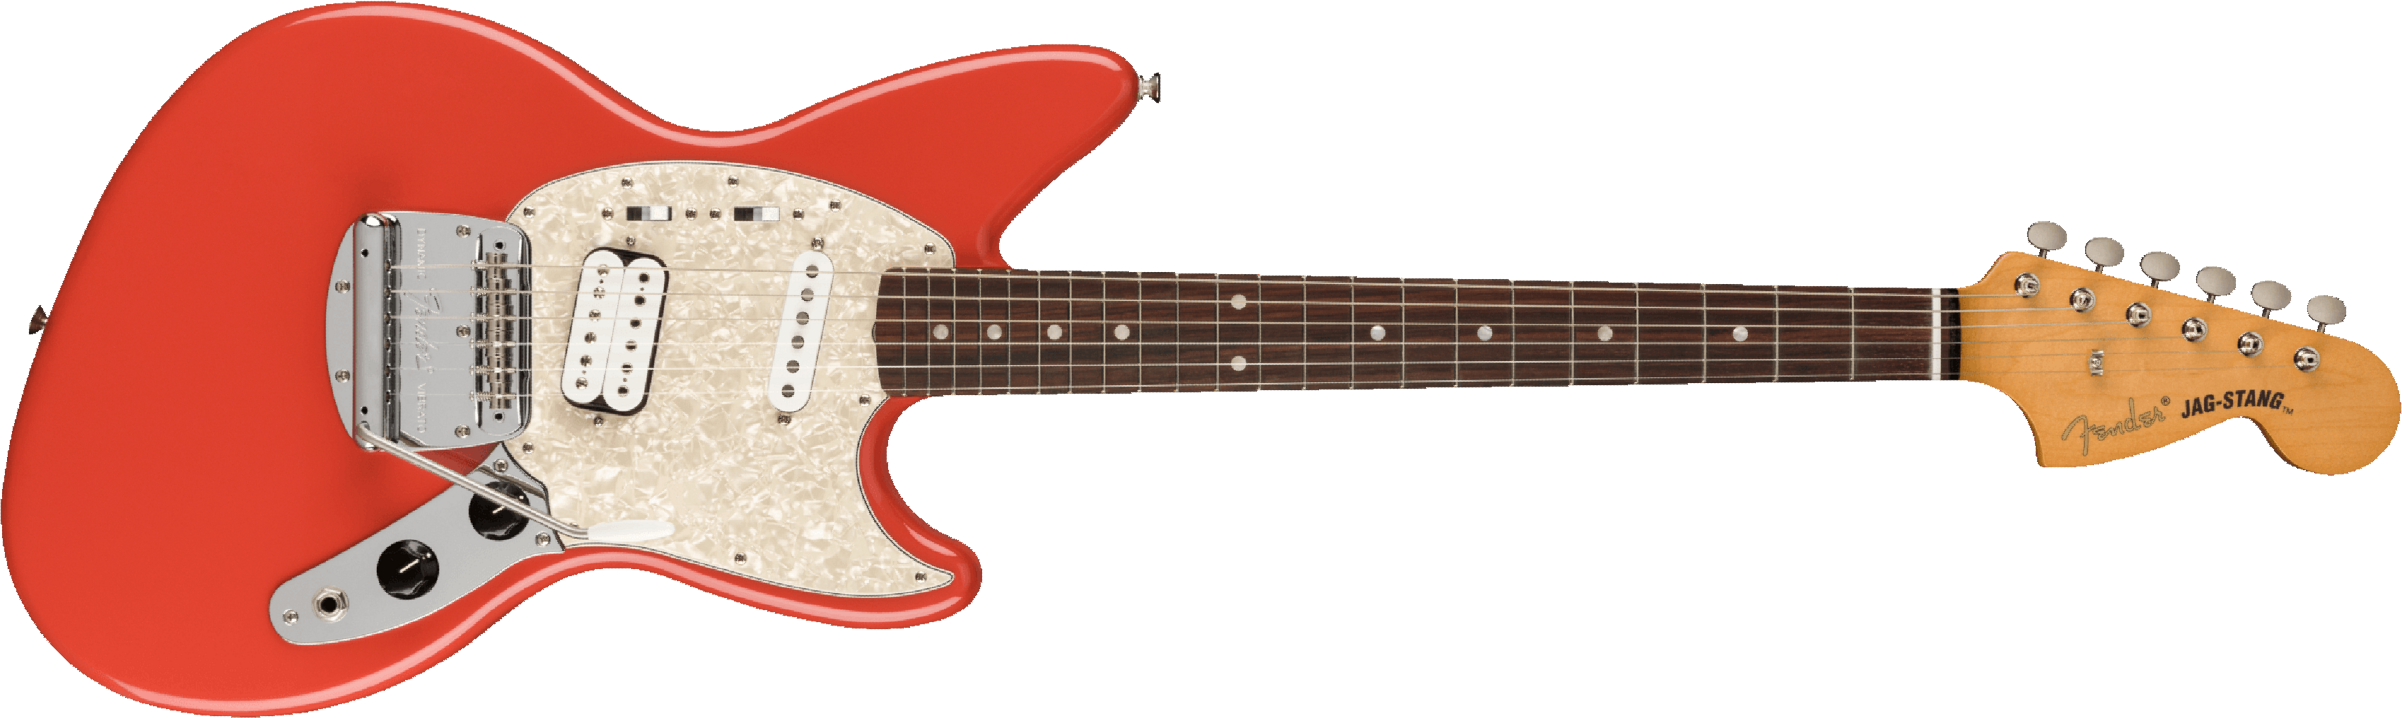 Fender Jag-stang Kurt Cobain Artist Hs Trem Rw - Fiesta Red - Guitare Électrique RÉtro Rock - Main picture